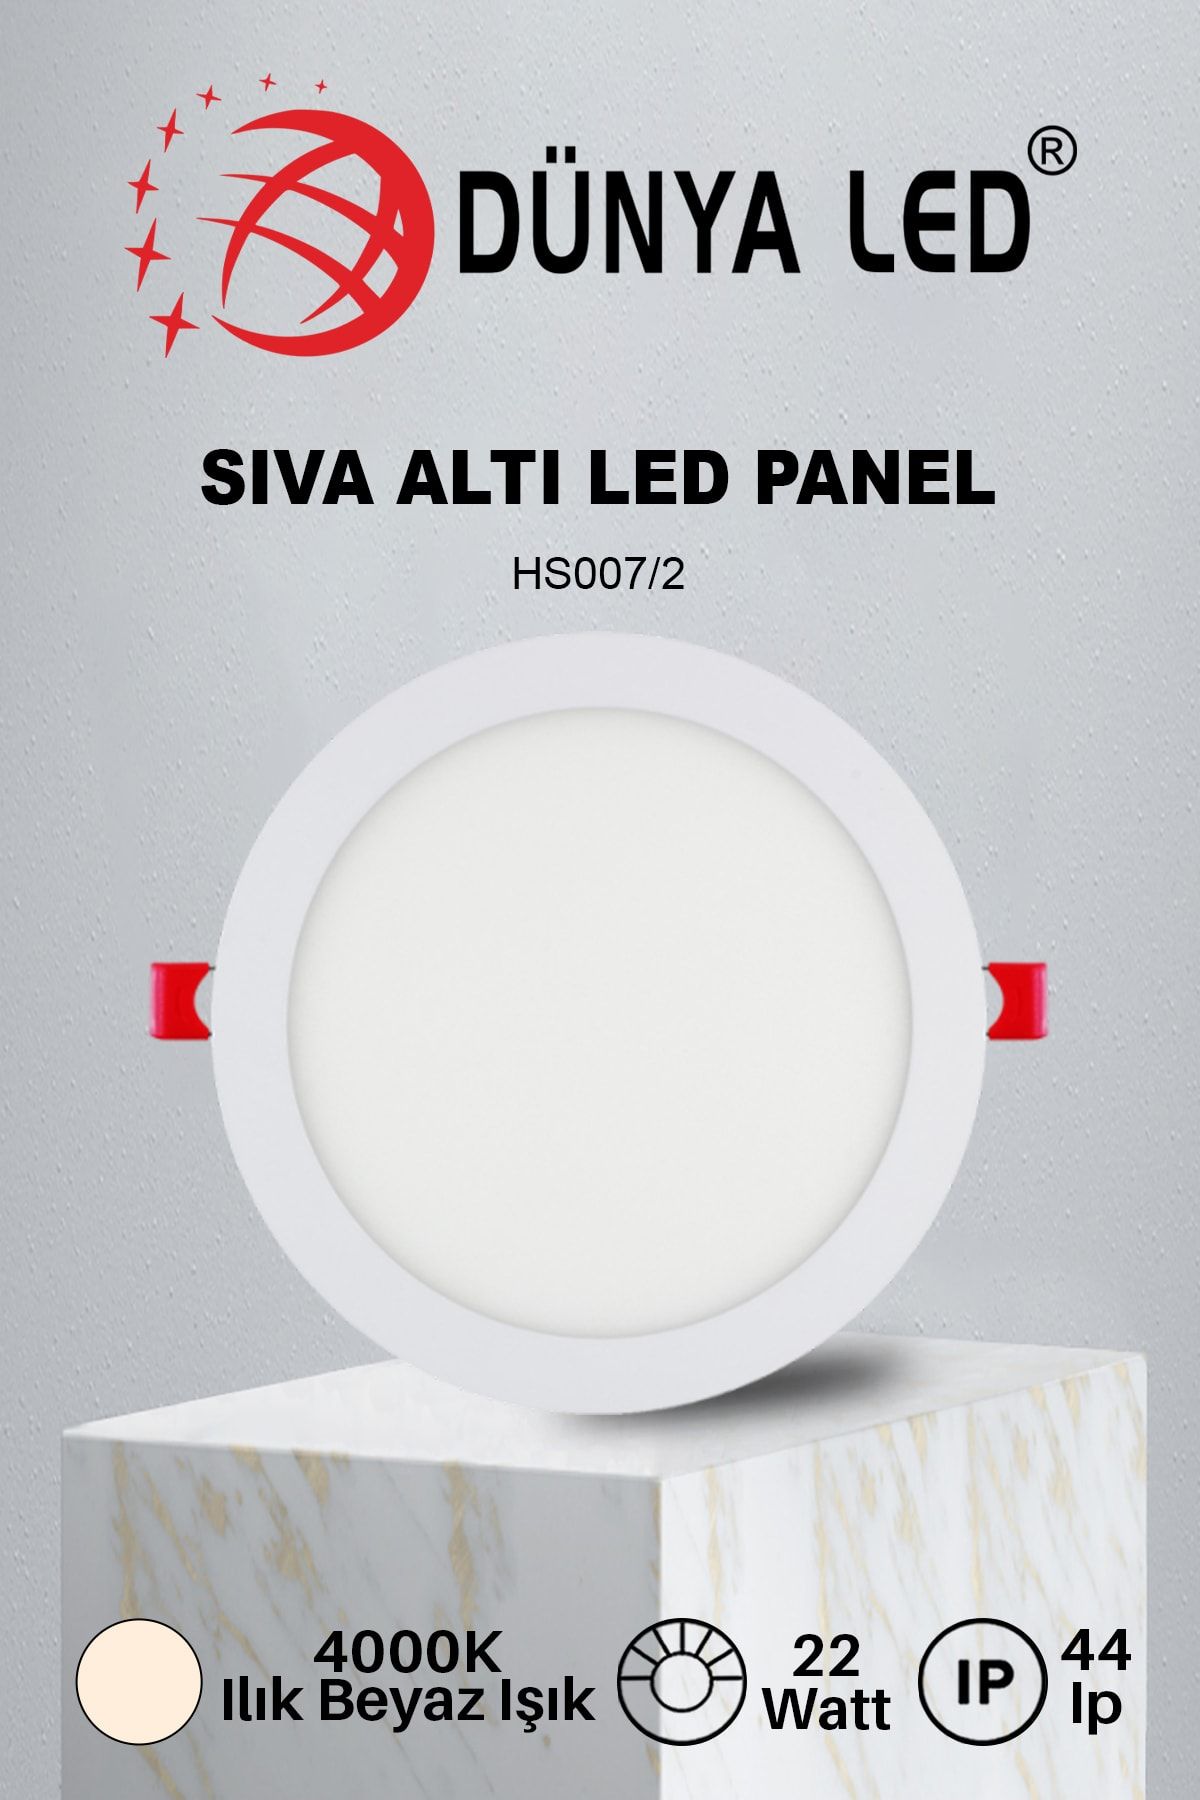 DÜNYA LED Hs.007/2 22w Sıva Altı Yuvarlak Spot Led Panel 4000k Ilık Beyaz Işık Drıver